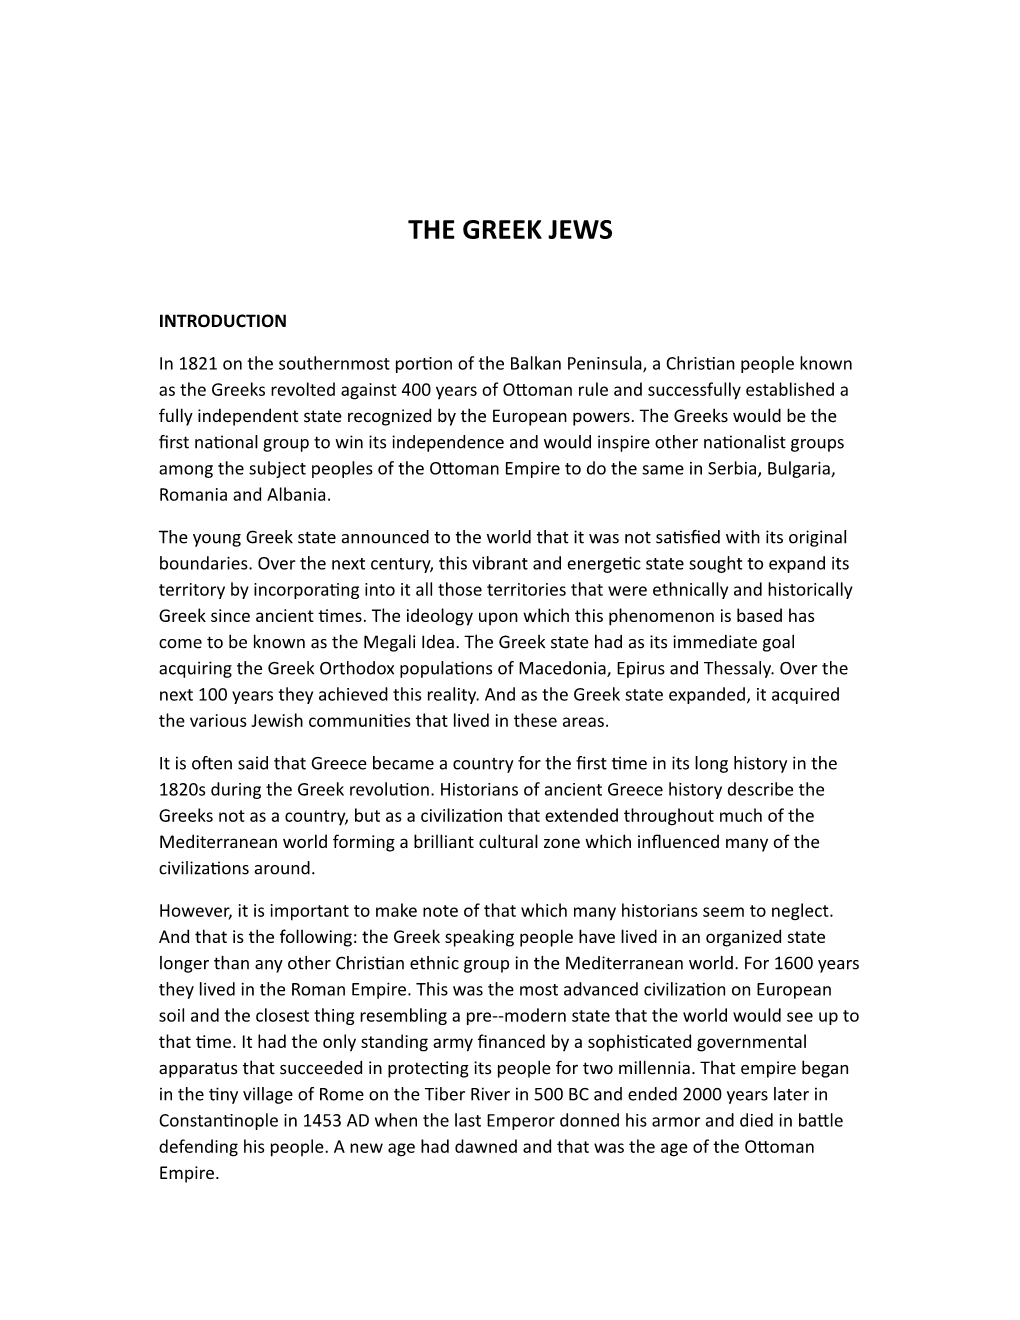 The Greek Jews